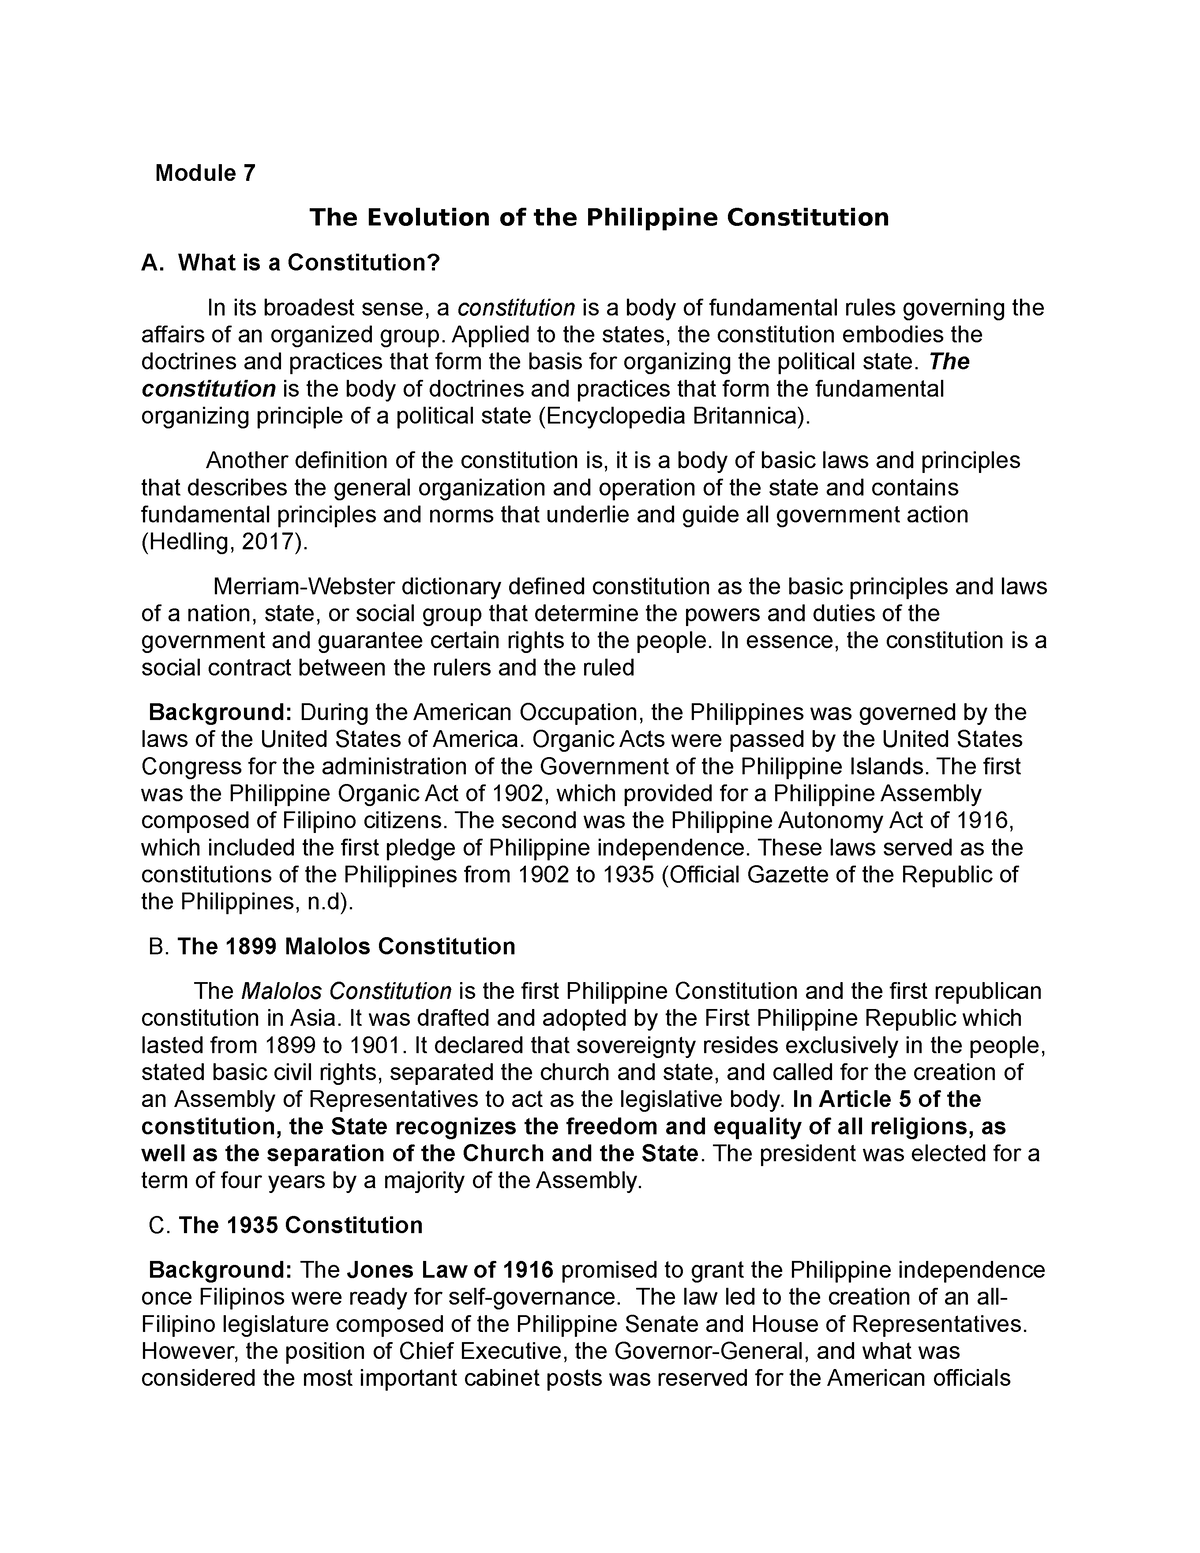 essay on philippine constitution